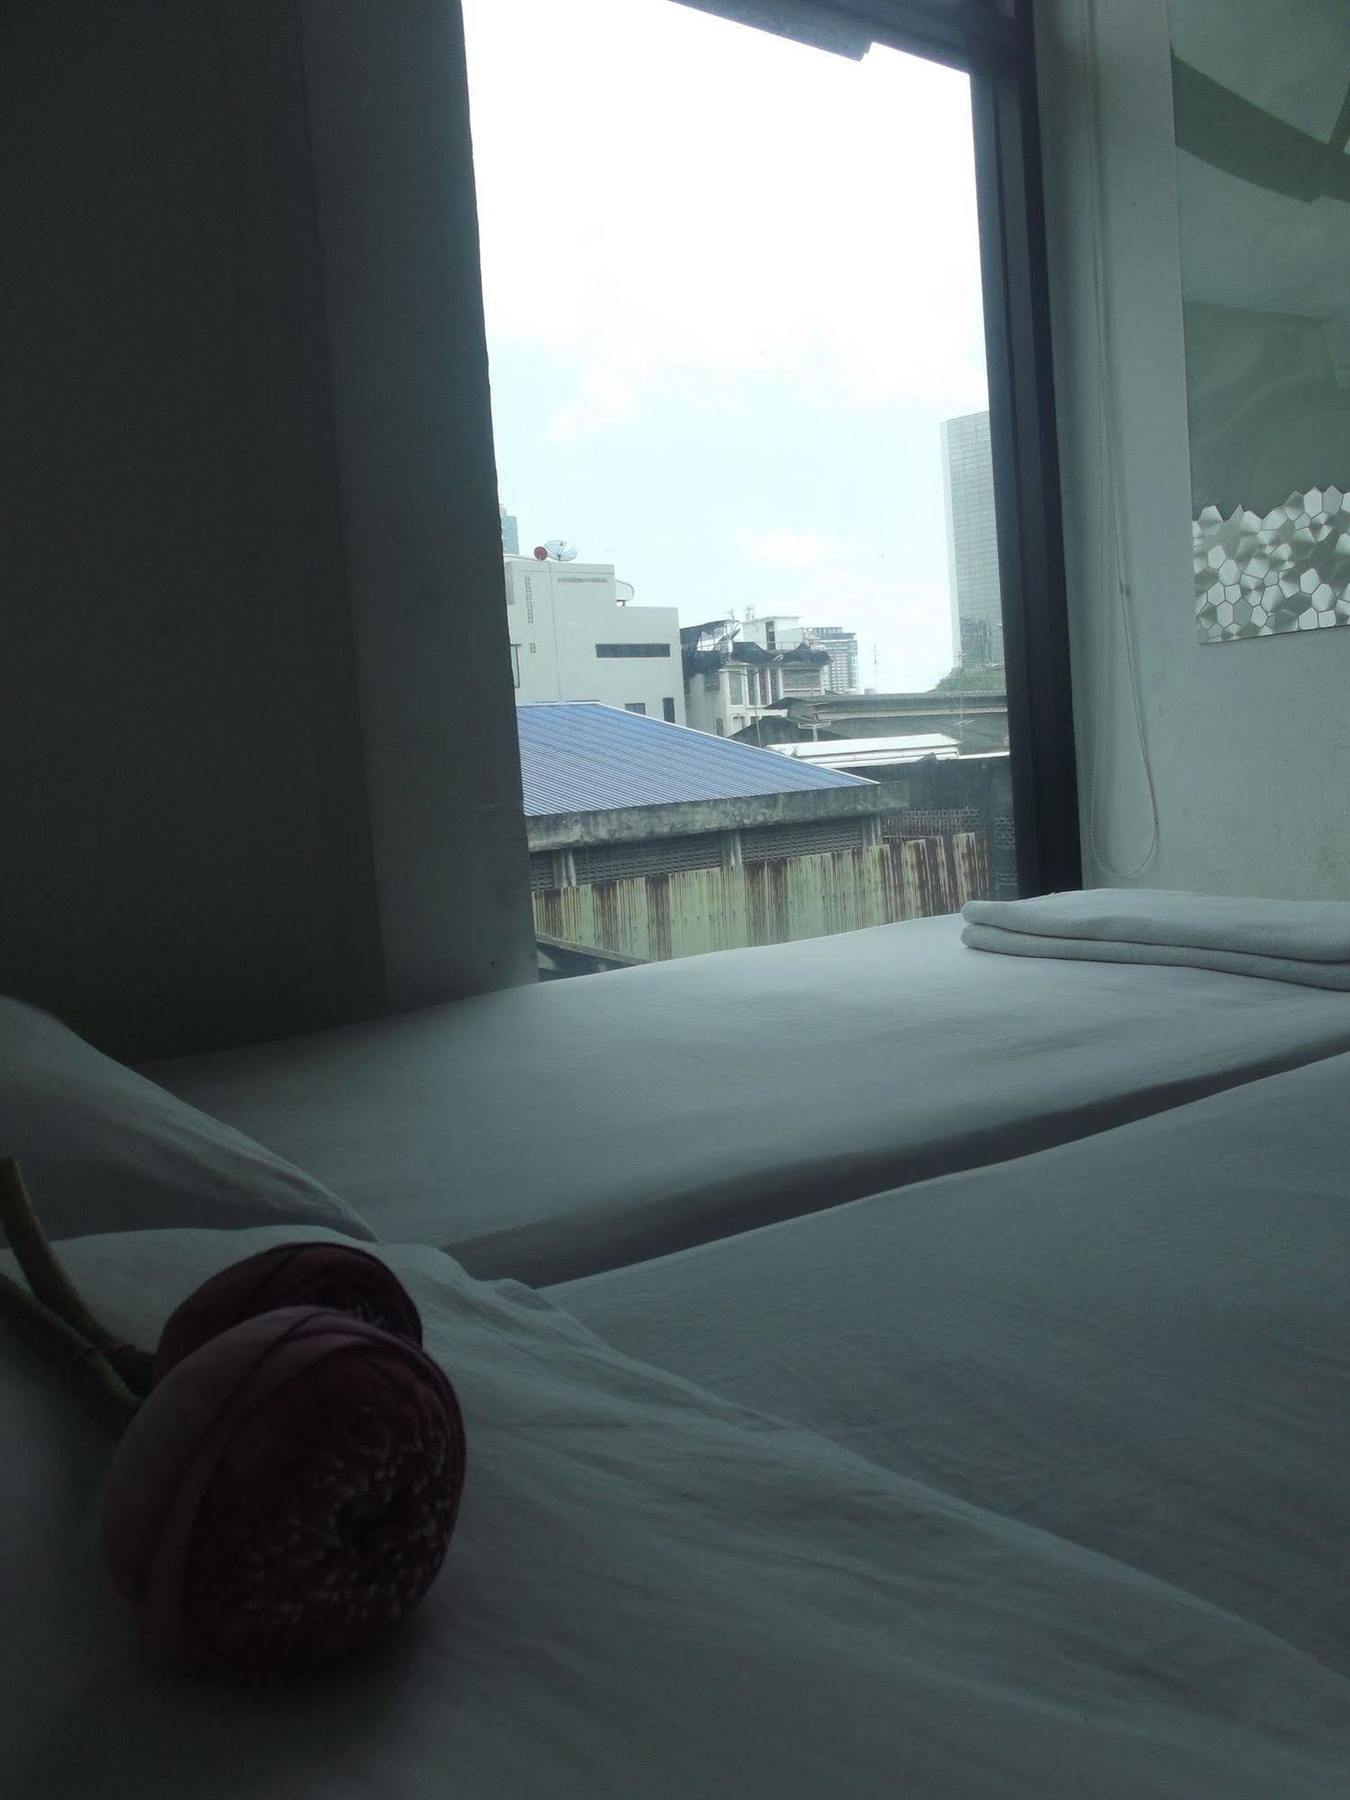 The Chilli Bangkok Hotel Zewnętrze zdjęcie